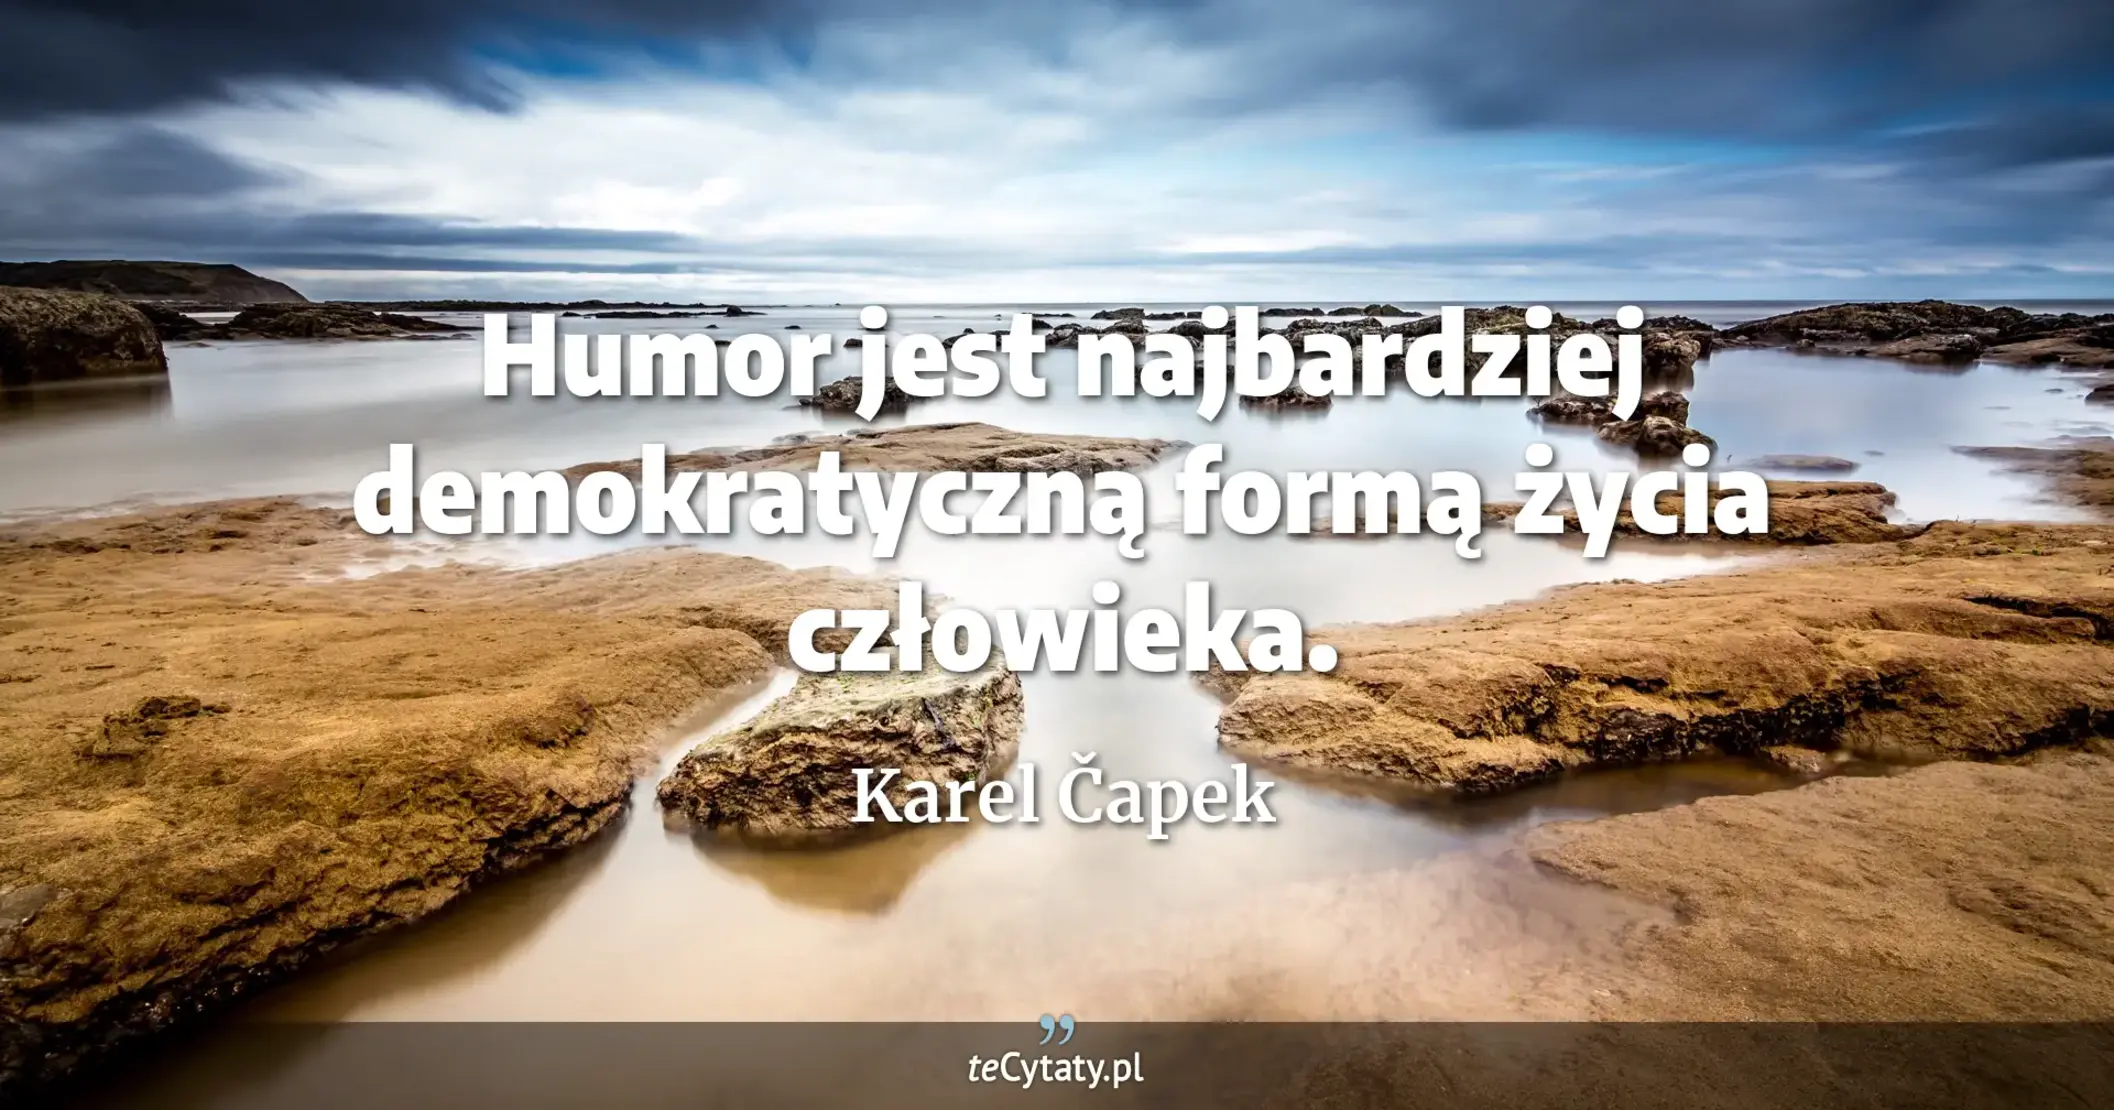 Humor jest najbardziej demokratyczną formą życia człowieka. - Karel Čapek